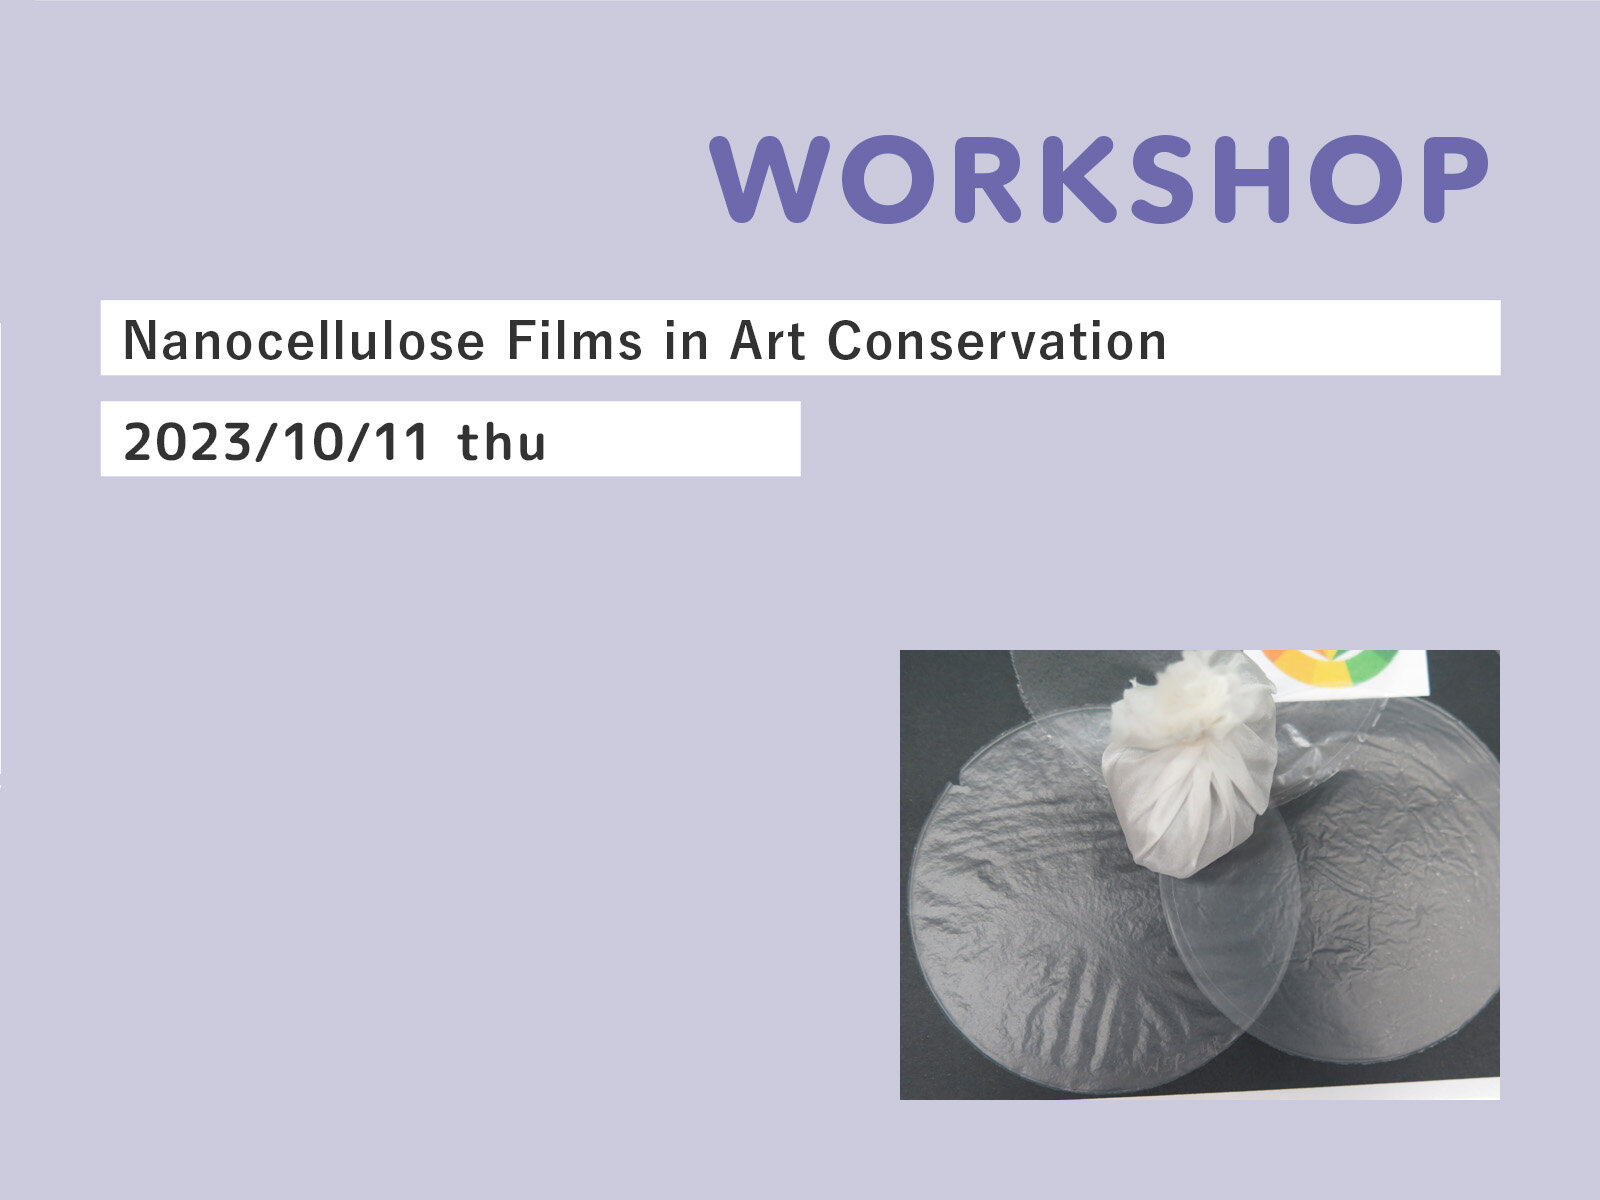 Workshop Nanocellulose Films in Art Conservation

